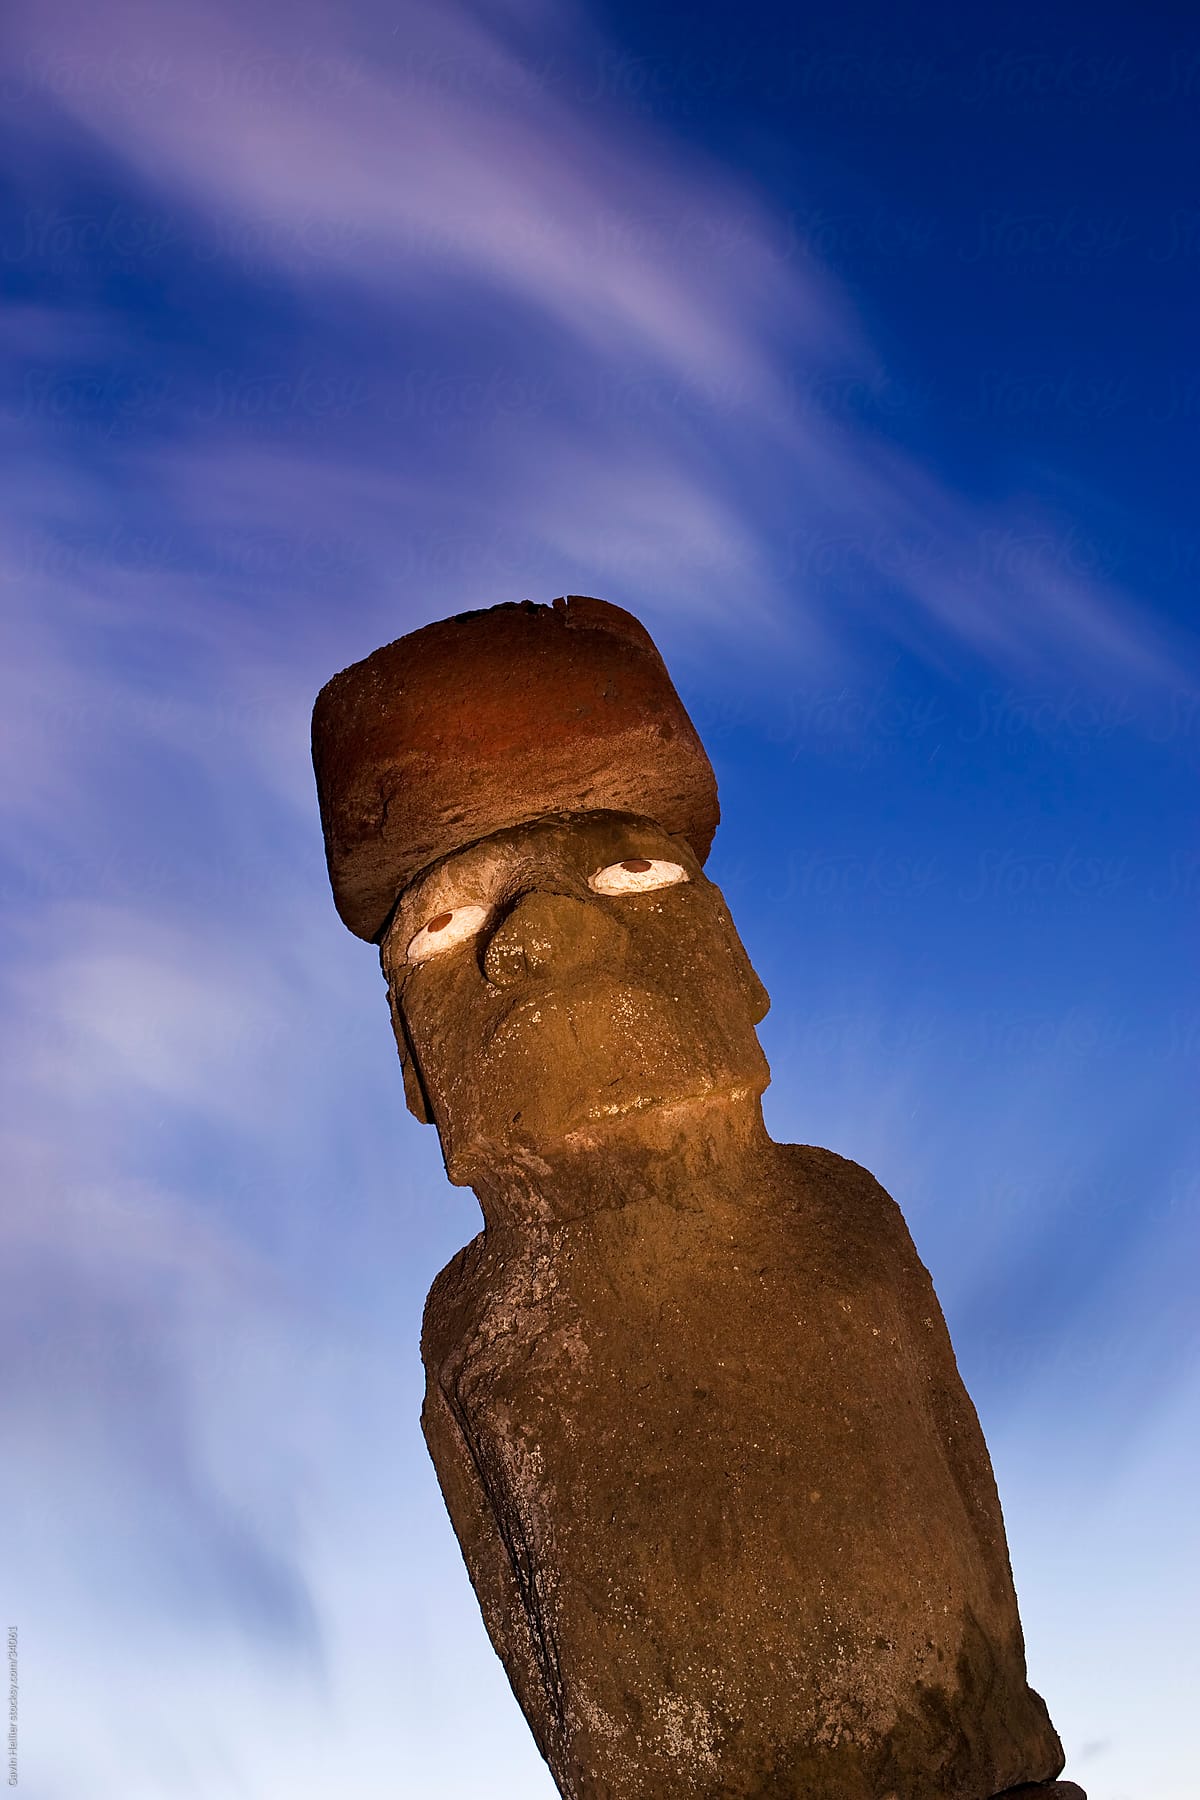 Chile, Rapa Nui, Isla de Pascua (Easter Island), Moai statue